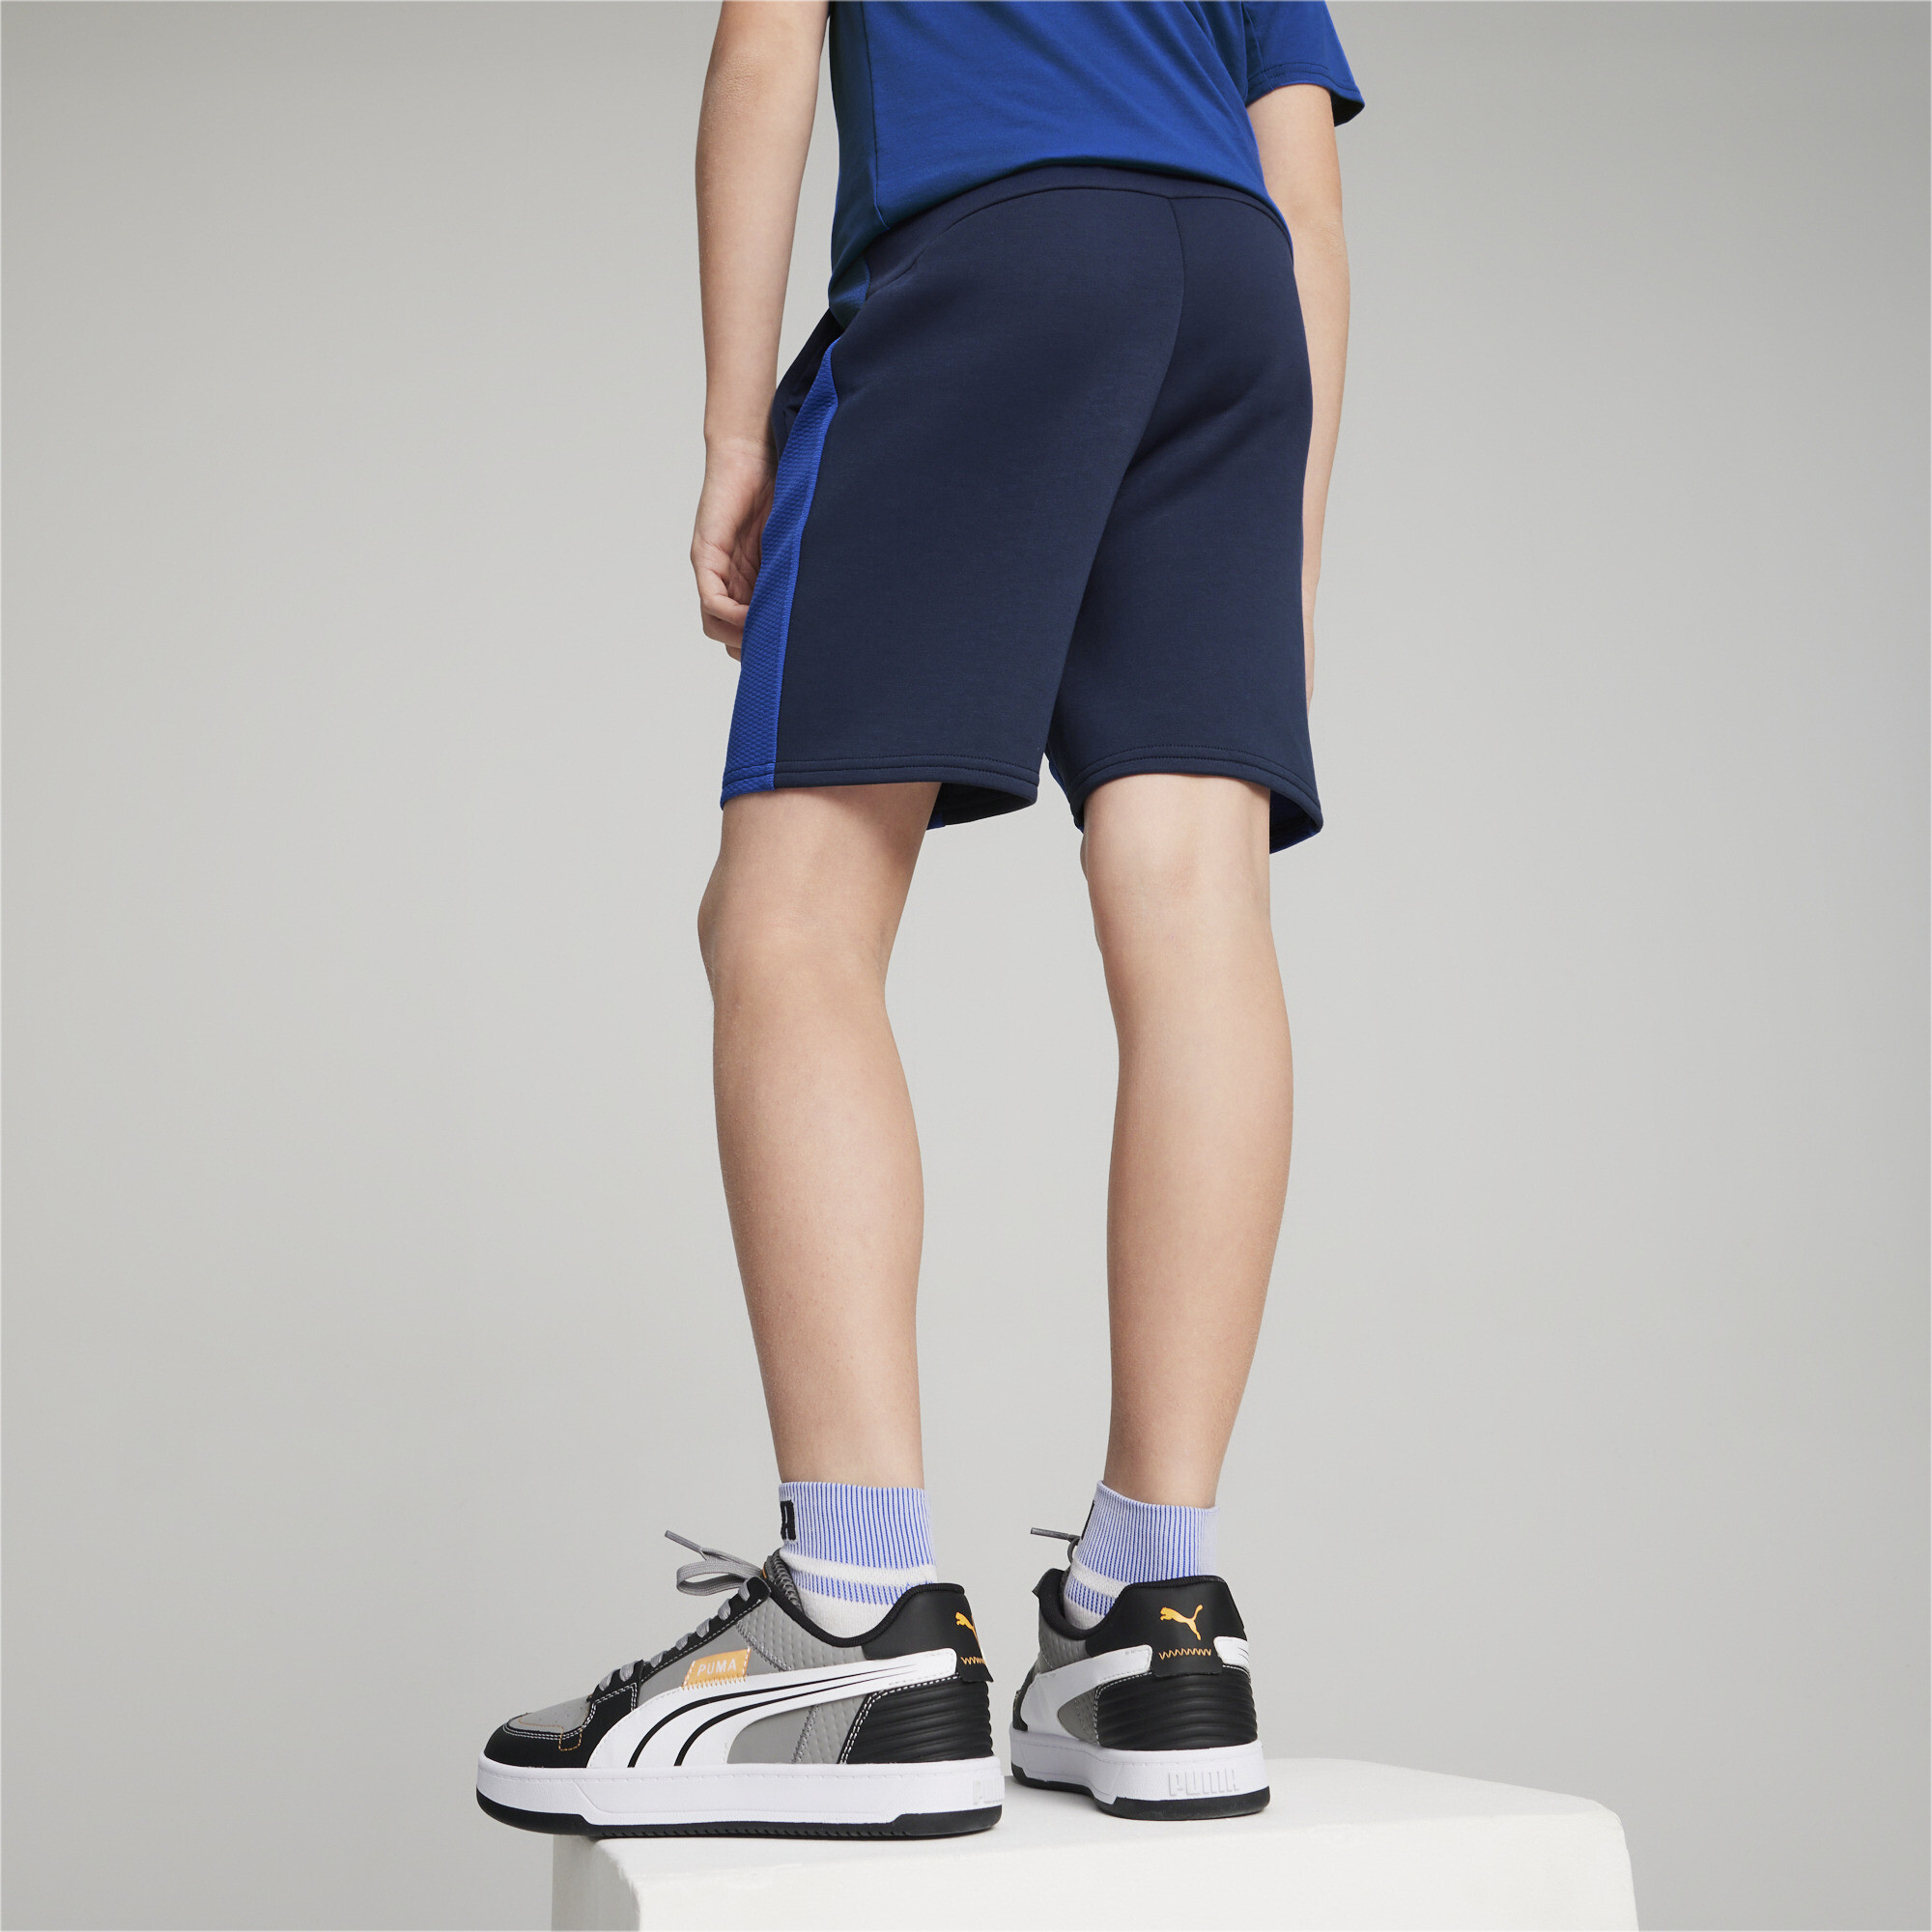 PUMA EVOSTRIPE Shorts In Blue, Size 15-16 Youth